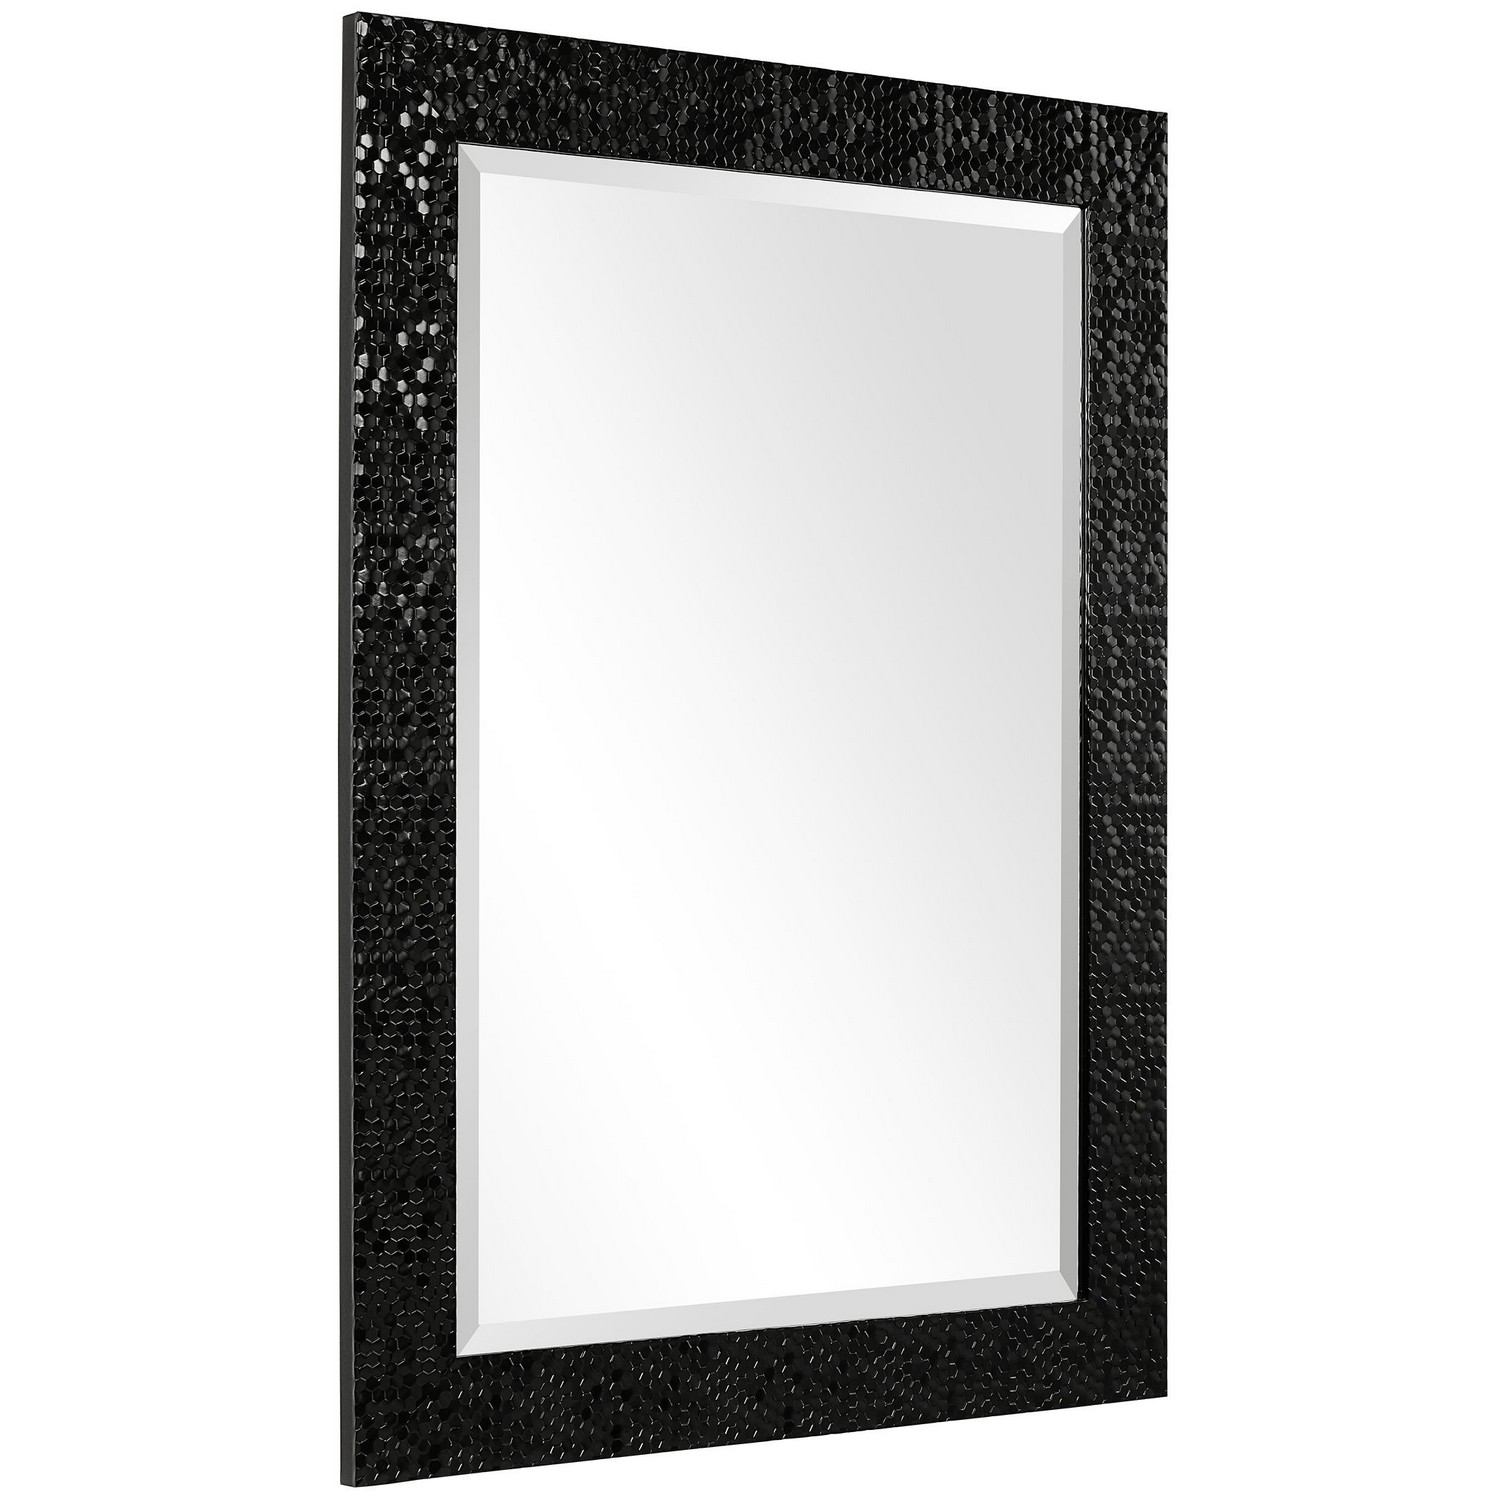 Uttermost W00506 Mirror - Black